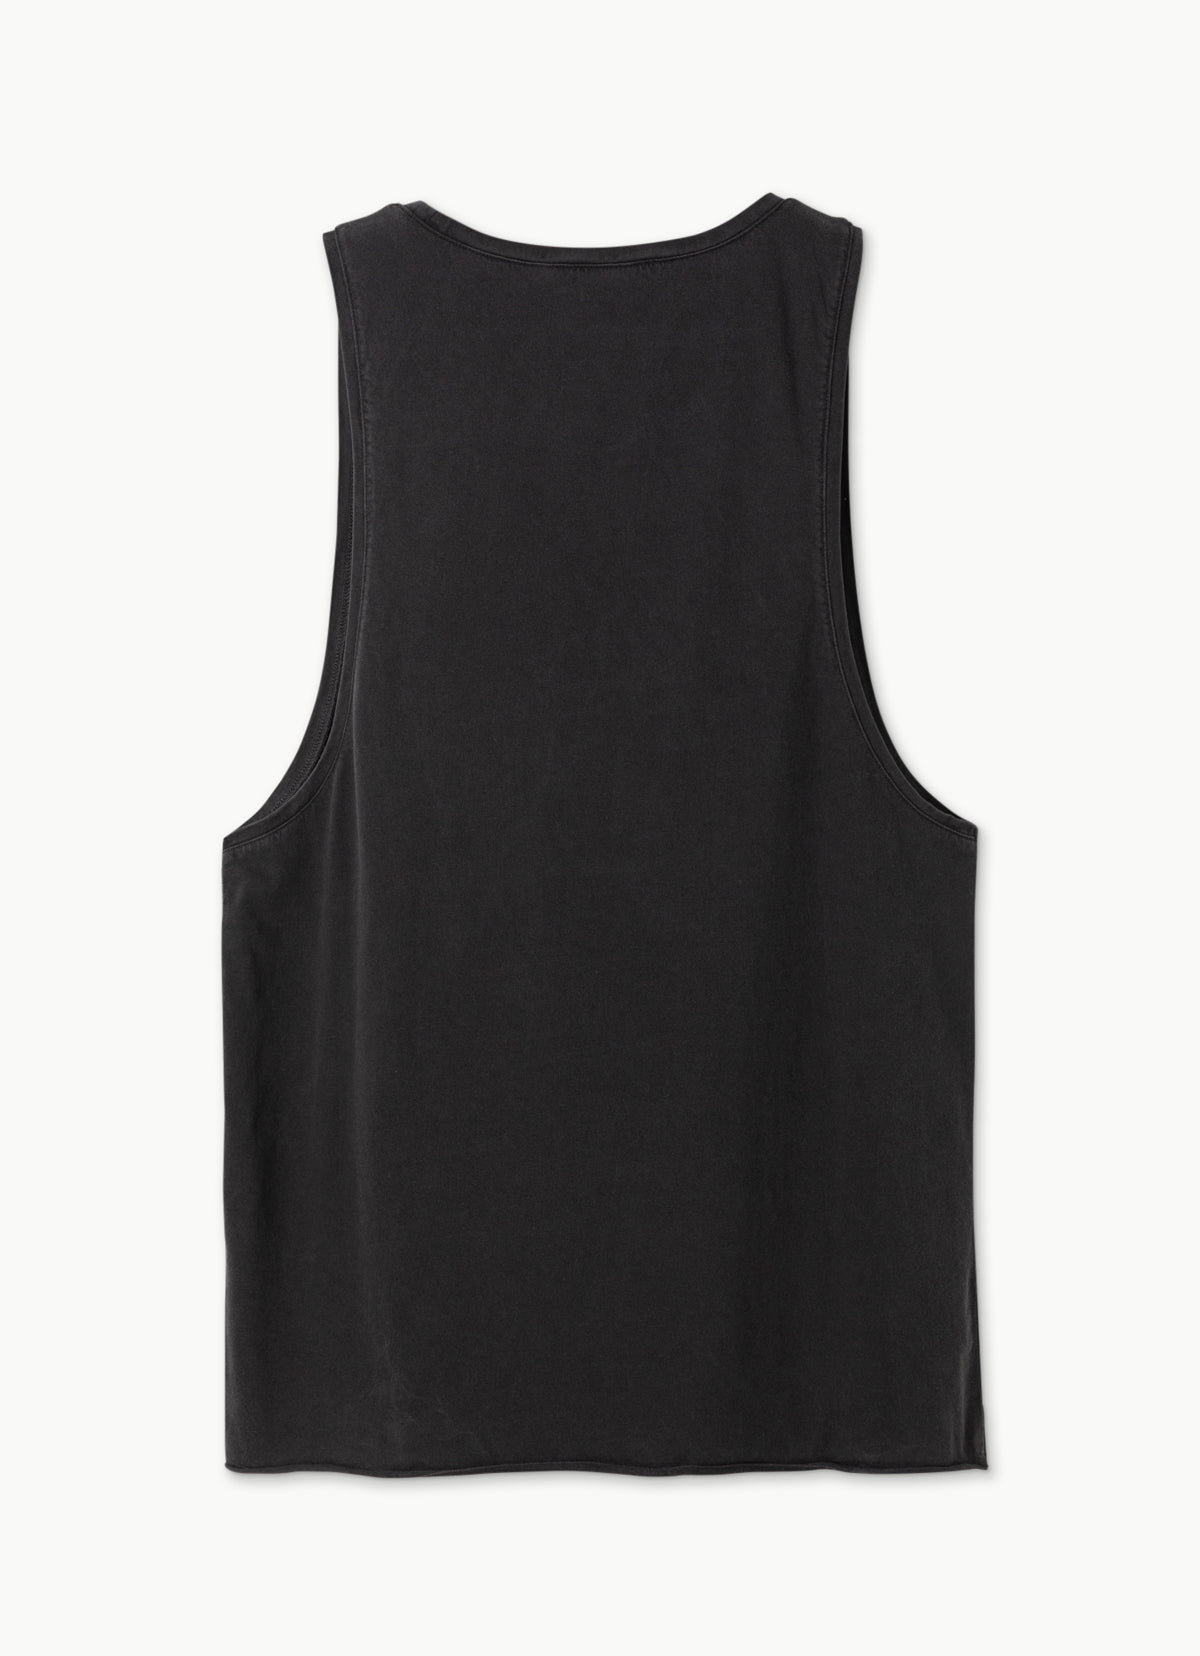 Short sleeve tank top (For Men)_Black